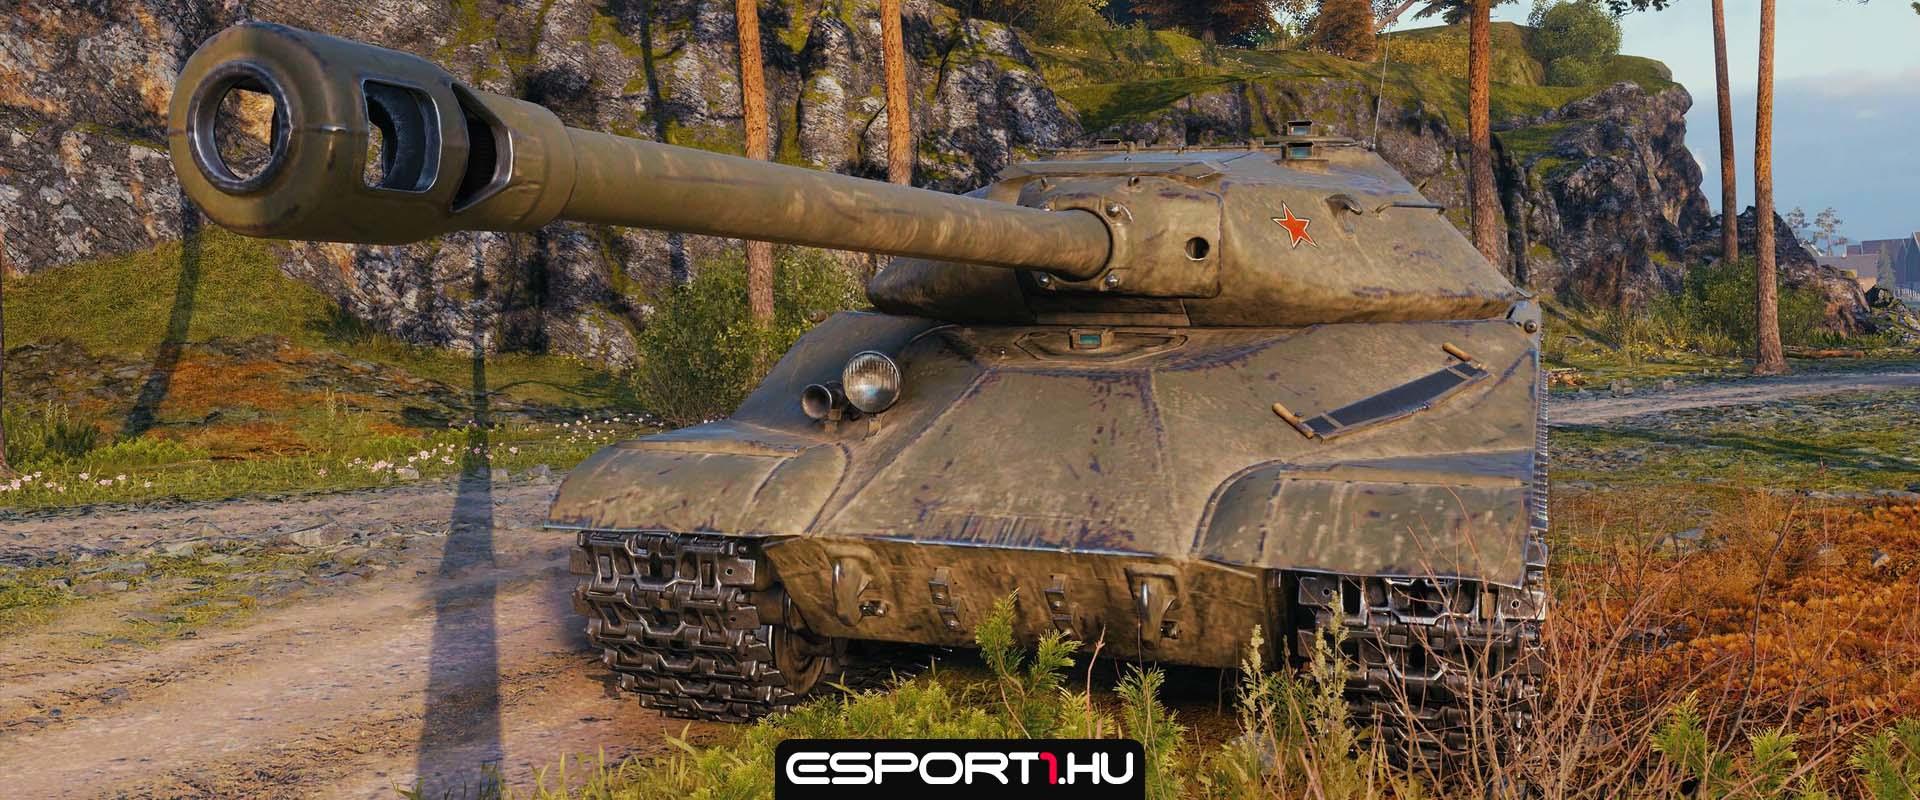 Tekintsd meg játékbeli fotókon az új szovjet prémium harckocsit!